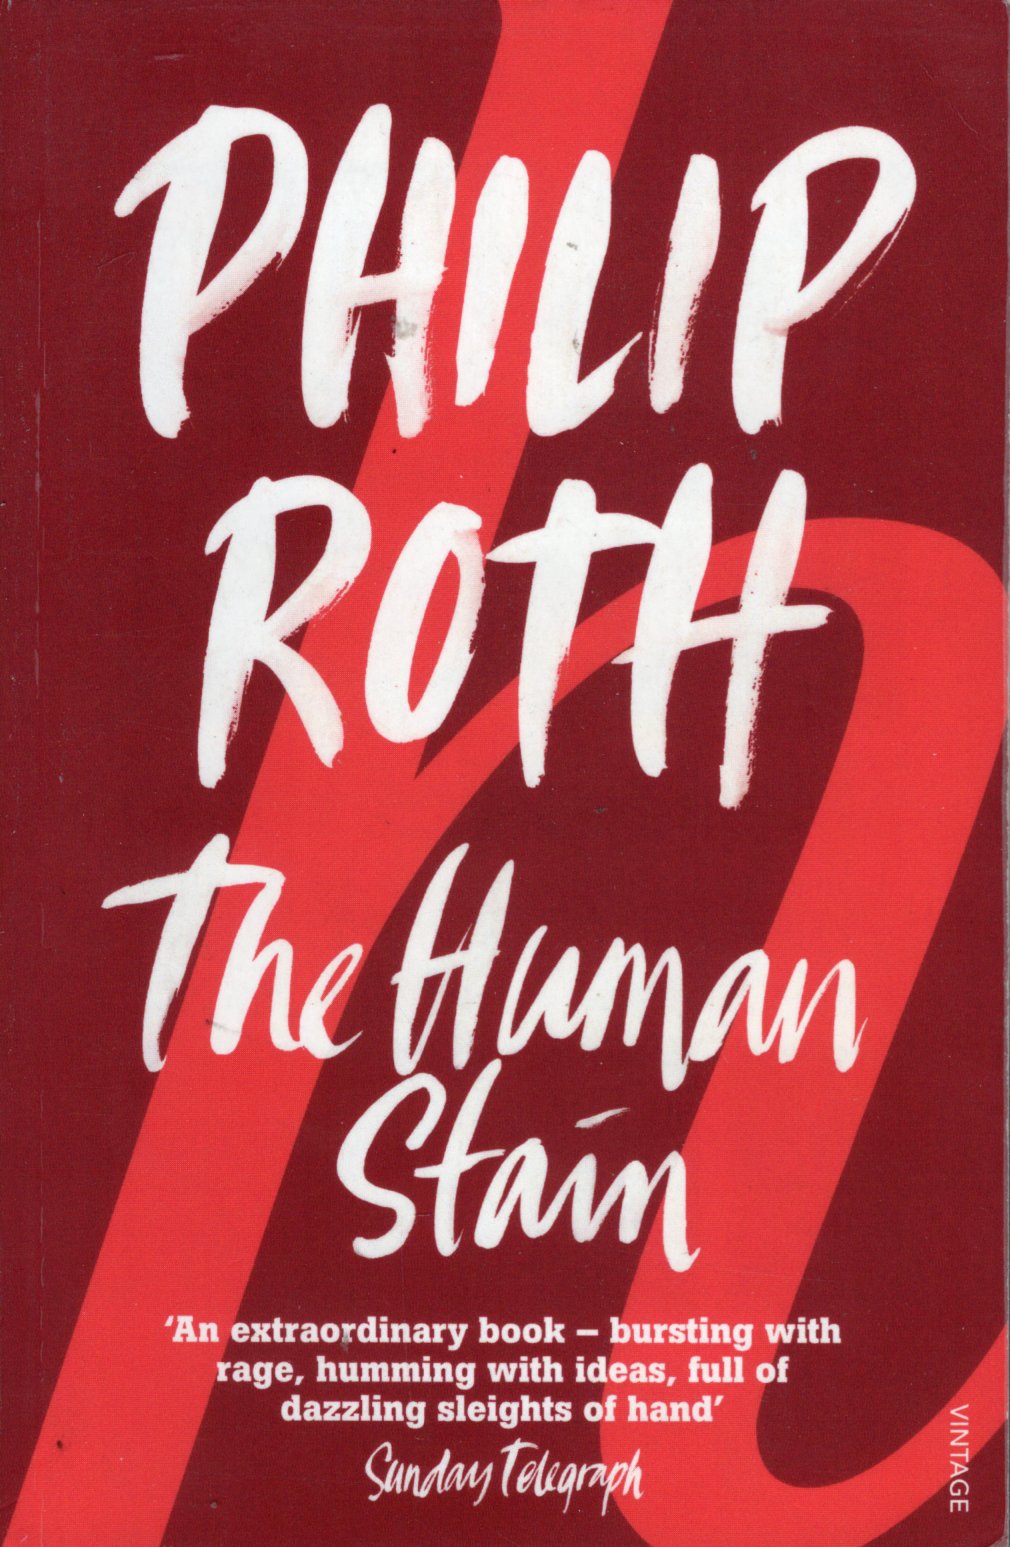 The Human Stain by Philip Roth te koop op hetbookcafe.nl